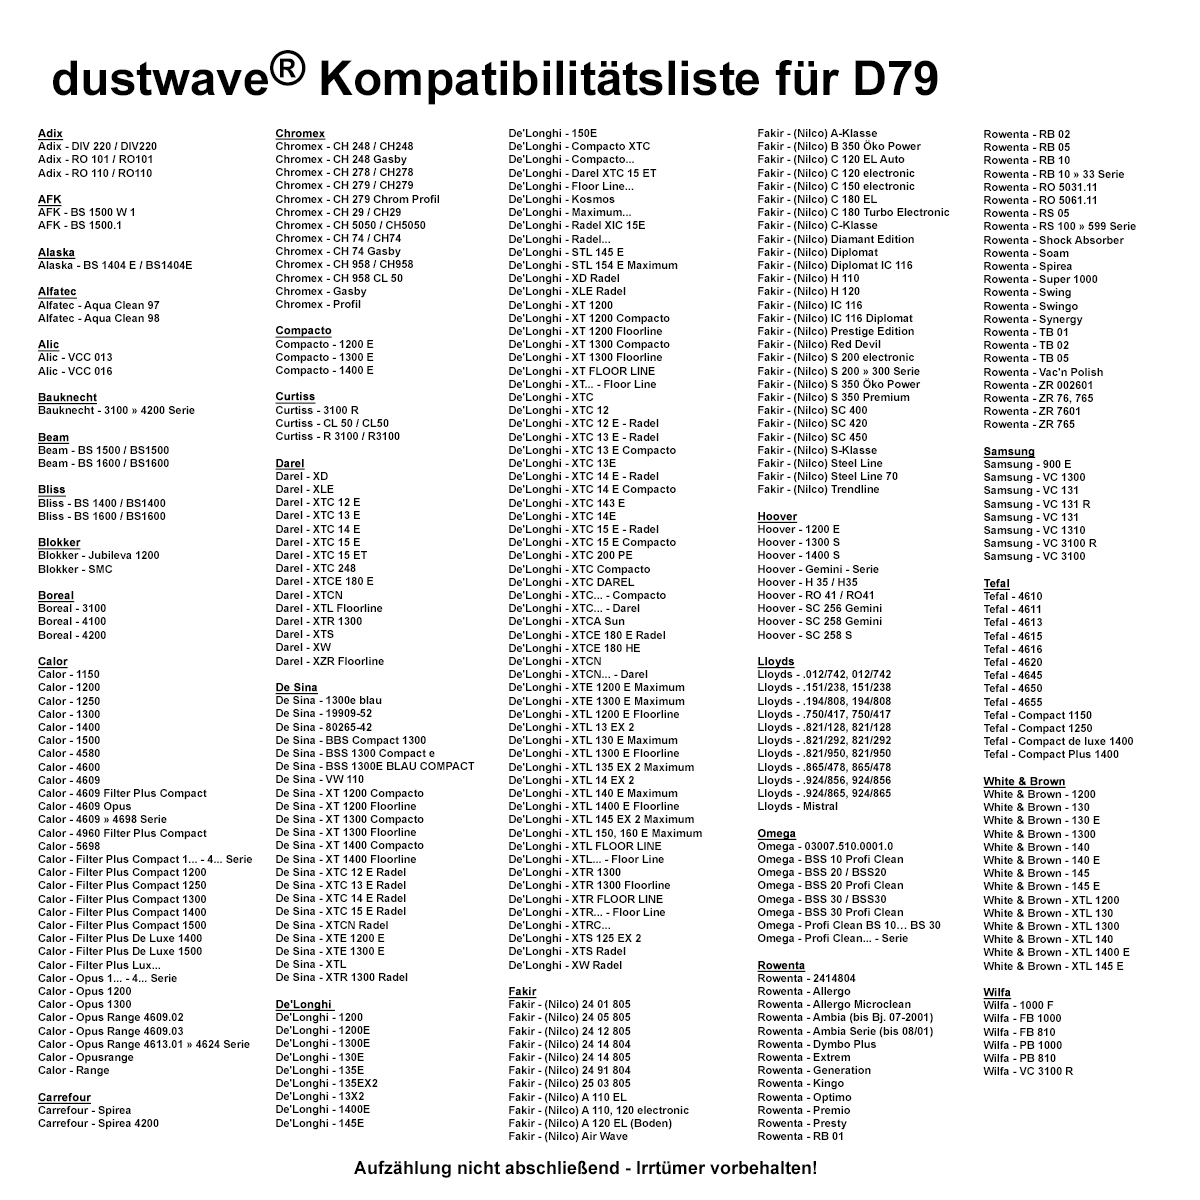 Dustwave® 40 Staubsaugerbeutel für Hoover RO 41 / RO41 - hocheffizient, mehrlagiges Mikrovlies mit Hygieneverschluss - Made in Germany